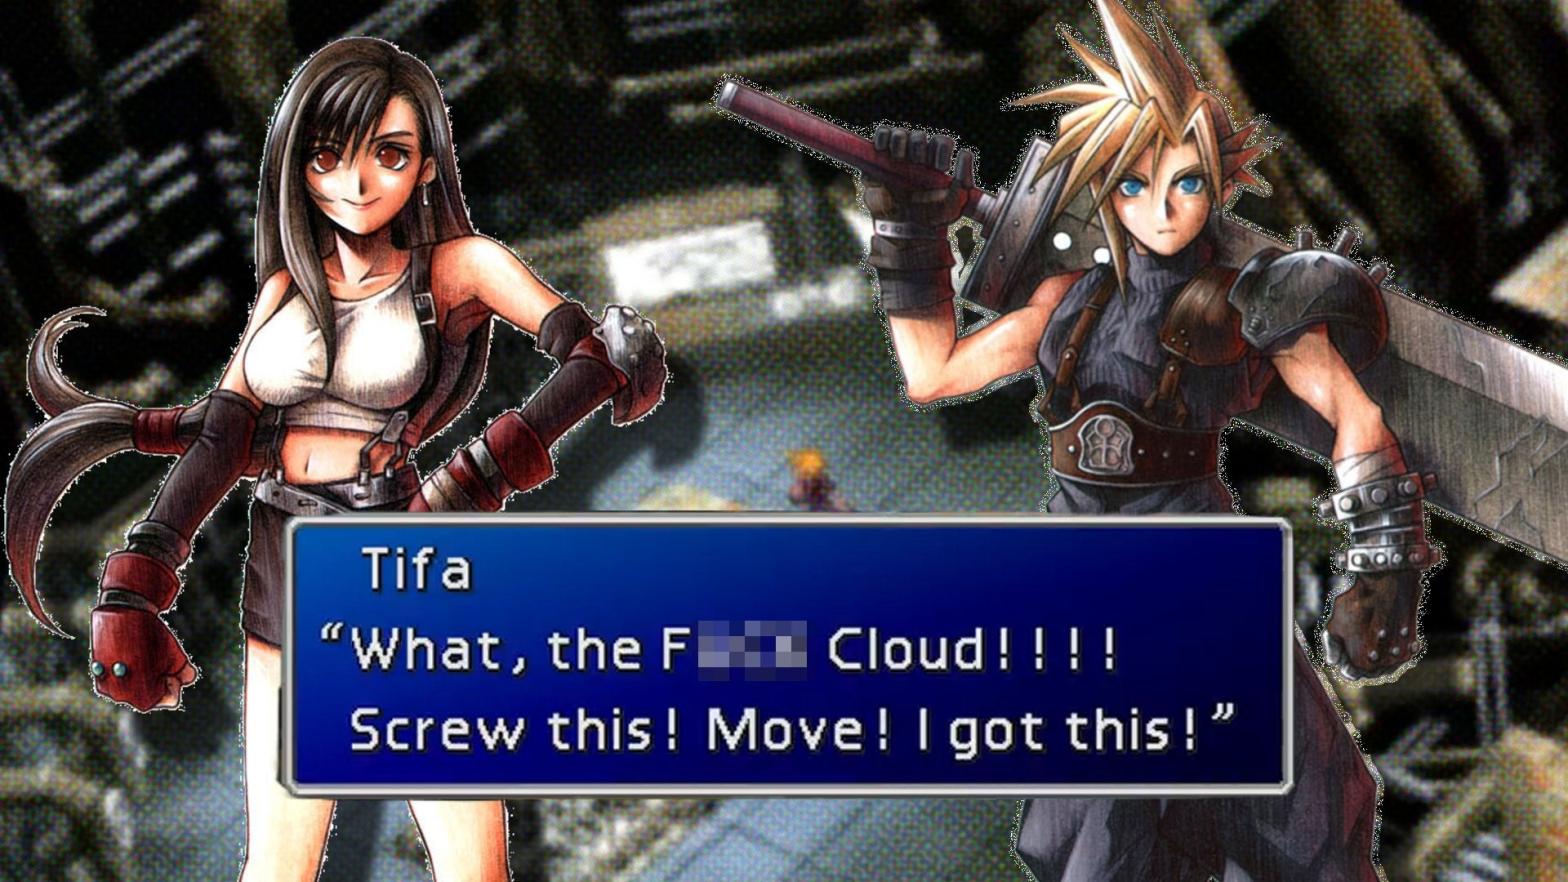 You tell him, Tifa. (Image: Square Enix / Tsunamods / PngWing / Kotaku)